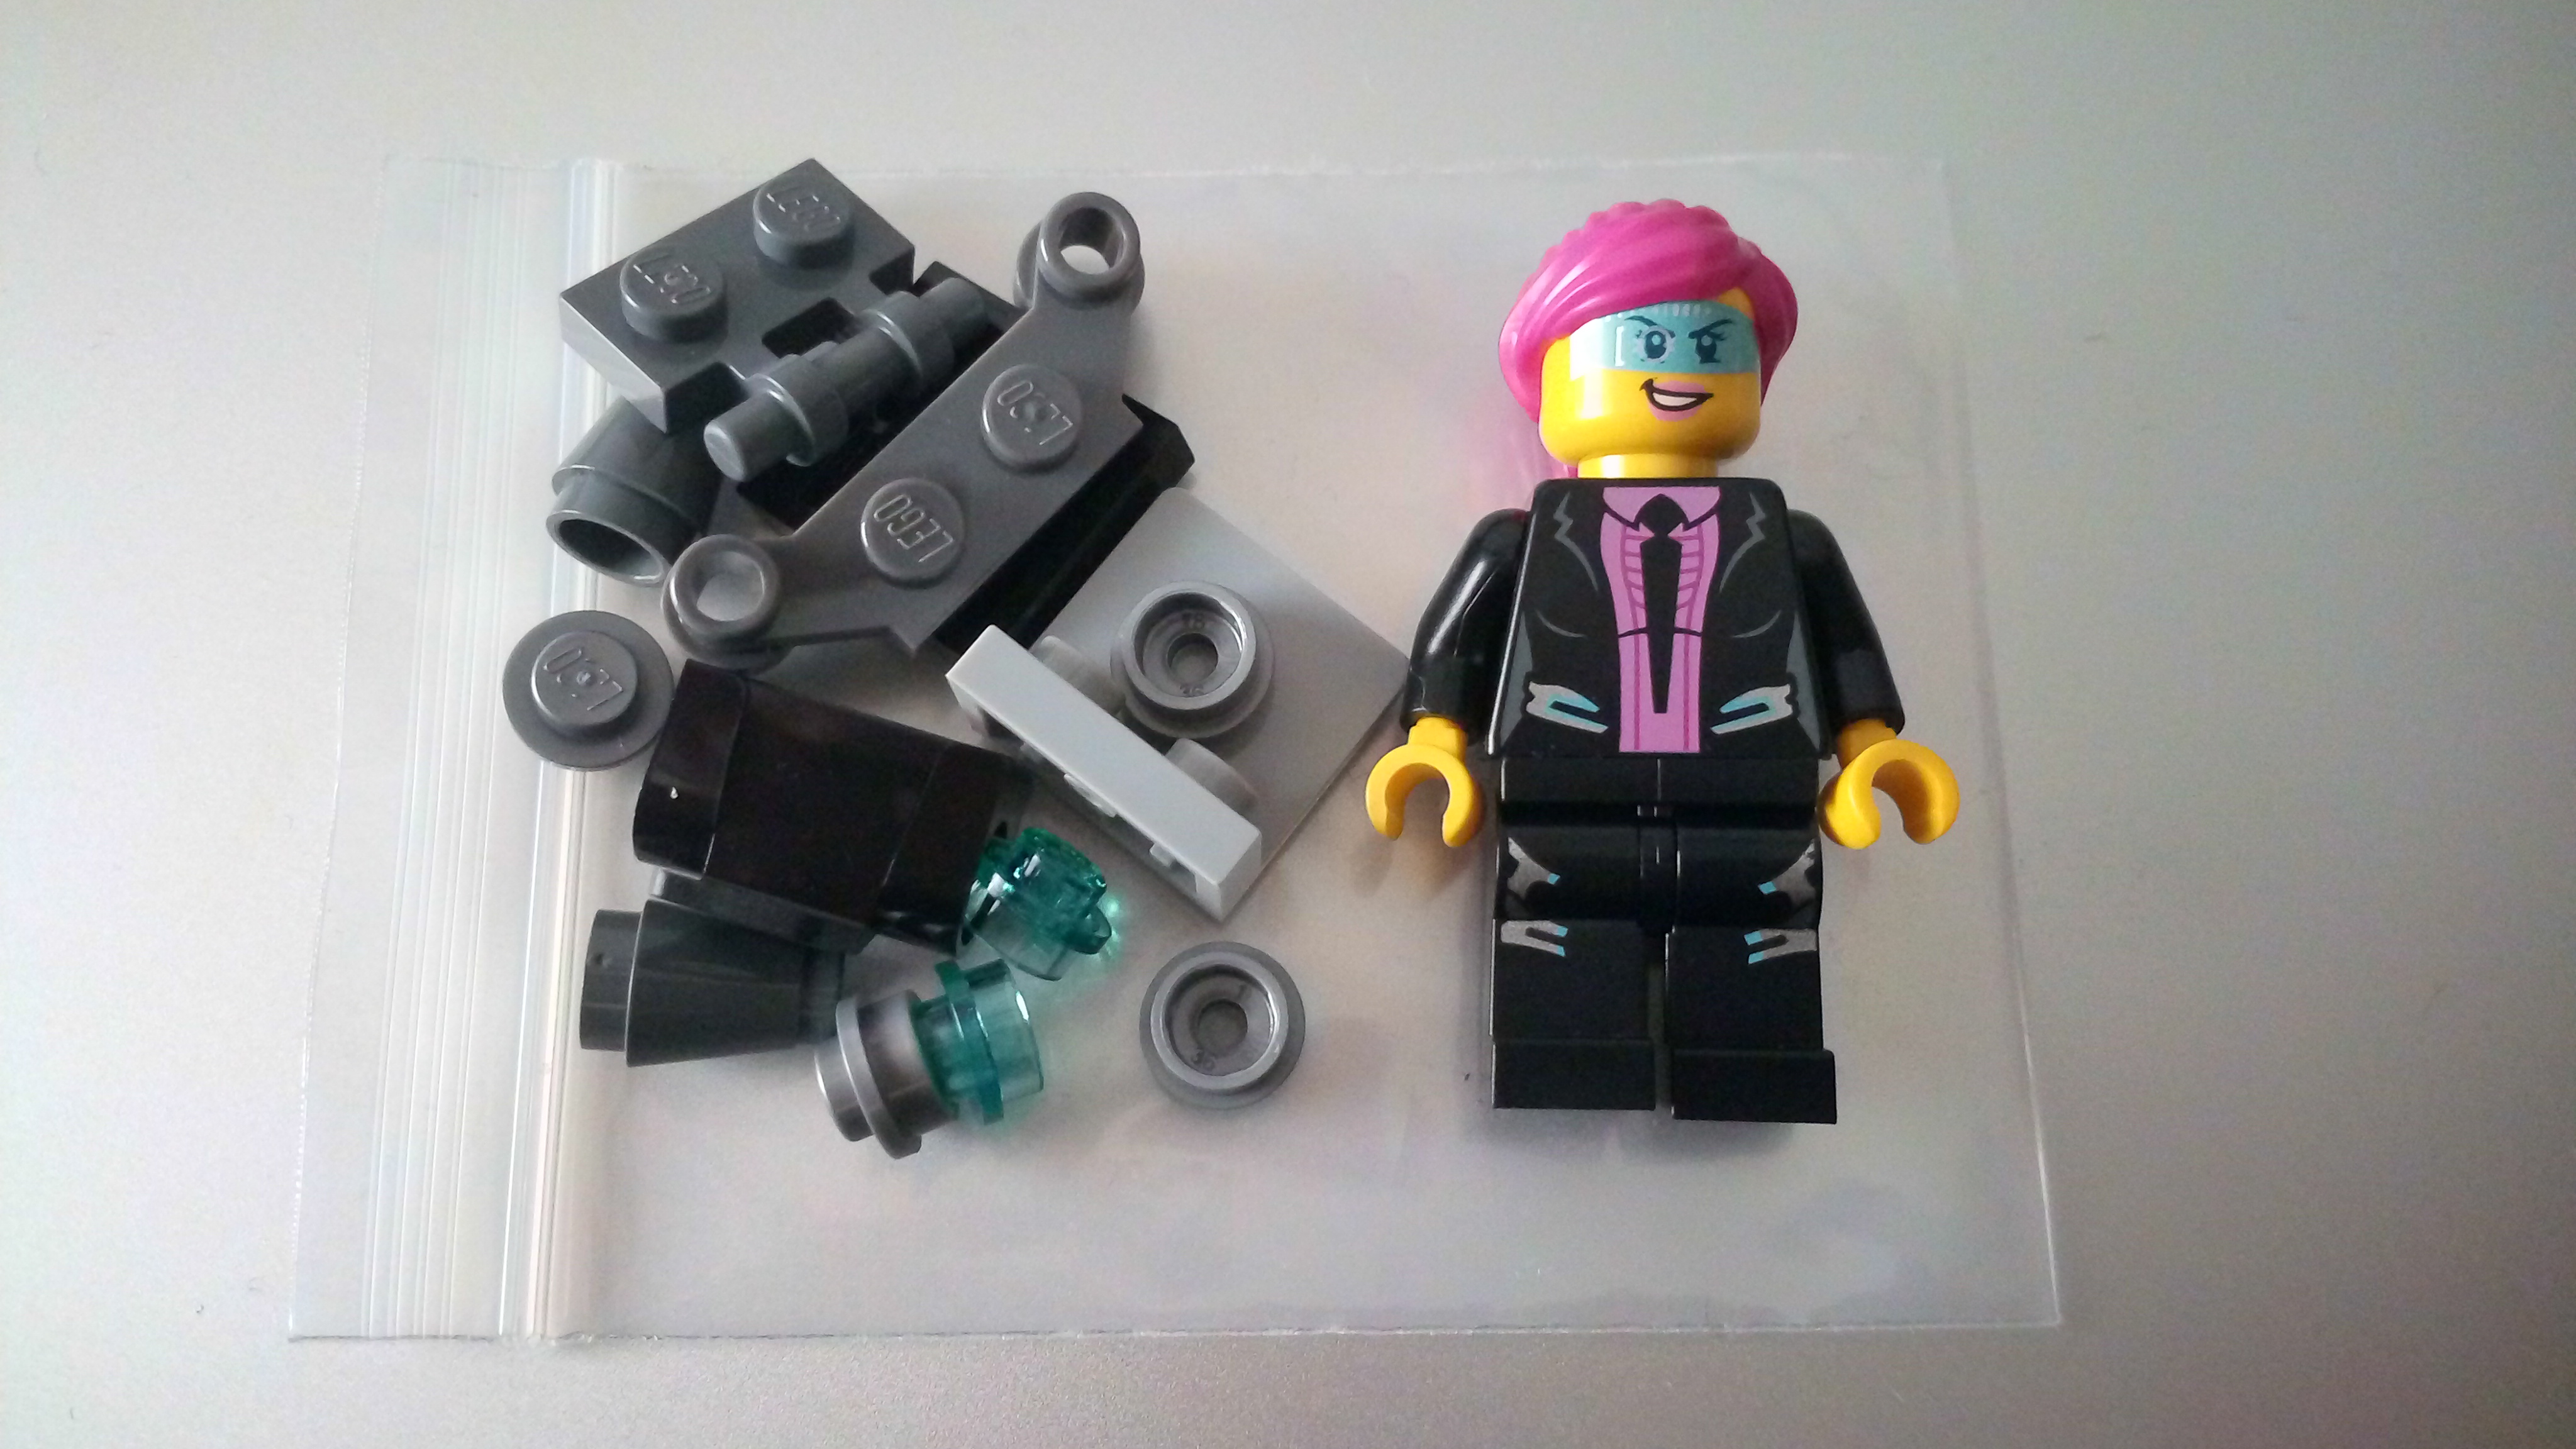 LEGO 乐高 uagt018 超级特工人仔 凯拉菲尼克斯 配飞行包 双表情